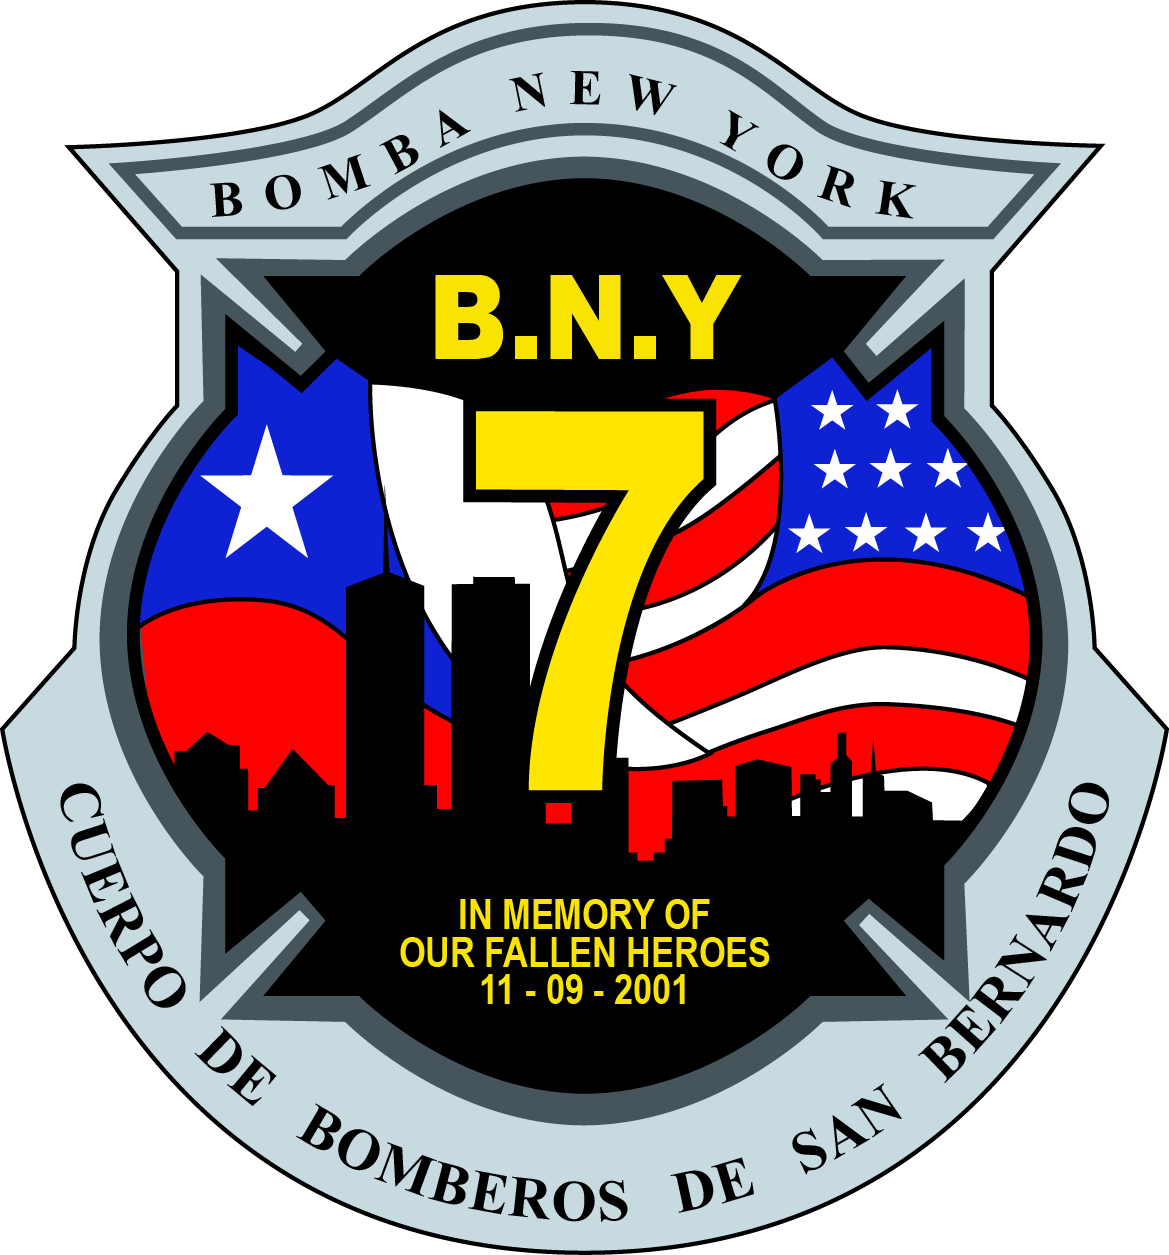 SÉPTIMA COMPAÑÍA DE BOMBEROS DE SAN BERNARDO - BOMBA NEW YORK